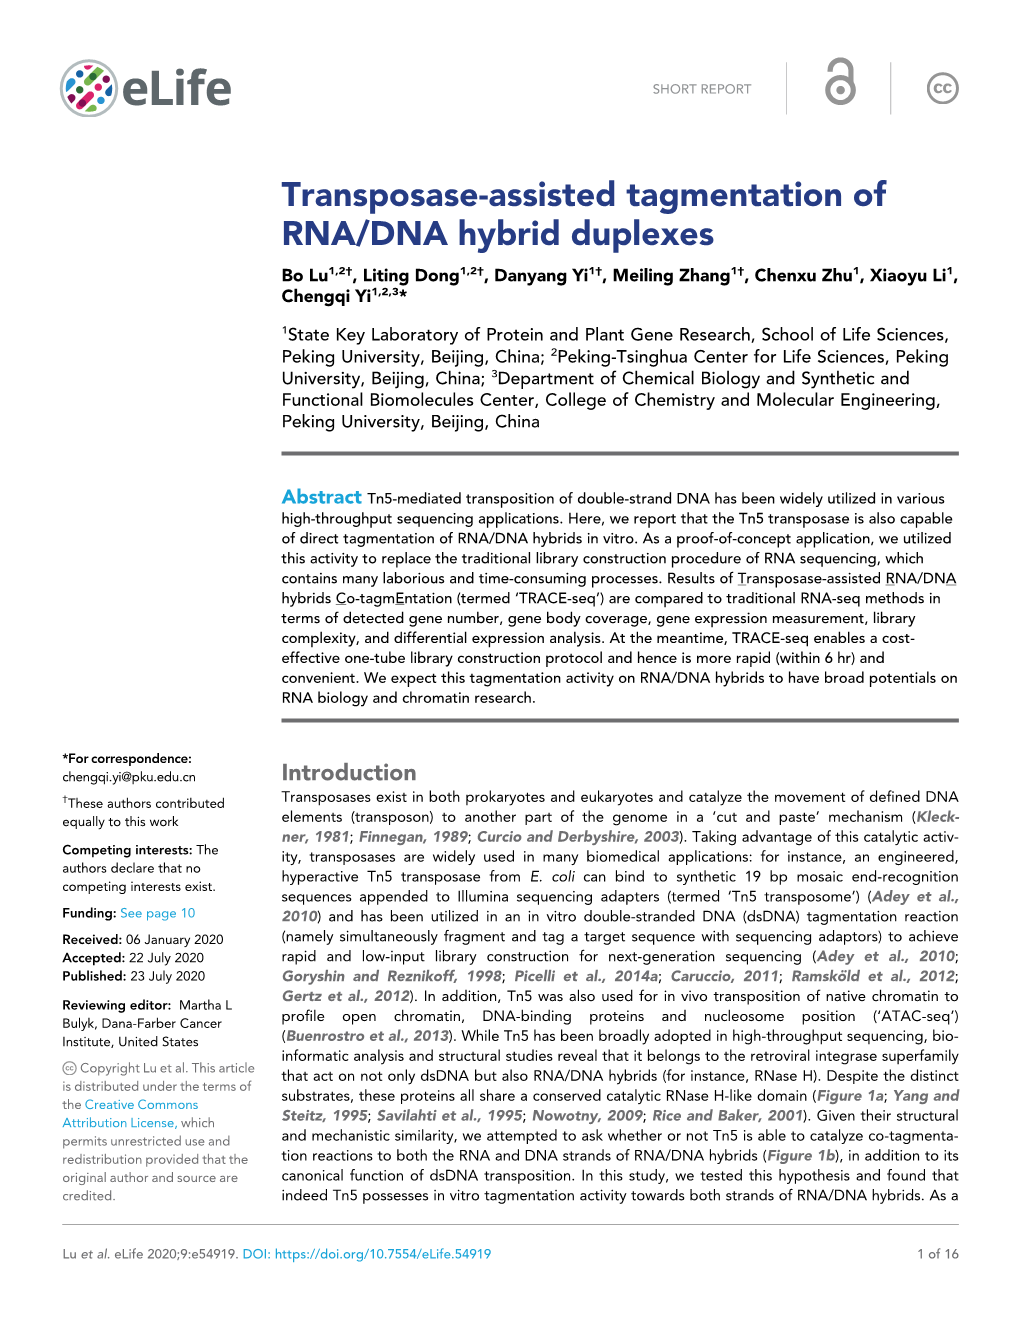 Transposase-Assisted Tagmentation of RNA/DNA Hybrid Duplexes Bo Lu1,2†, Liting Dong1,2†, Danyang Yi1†, Meiling Zhang1†, Chenxu Zhu1, Xiaoyu Li1, Chengqi Yi1,2,3*